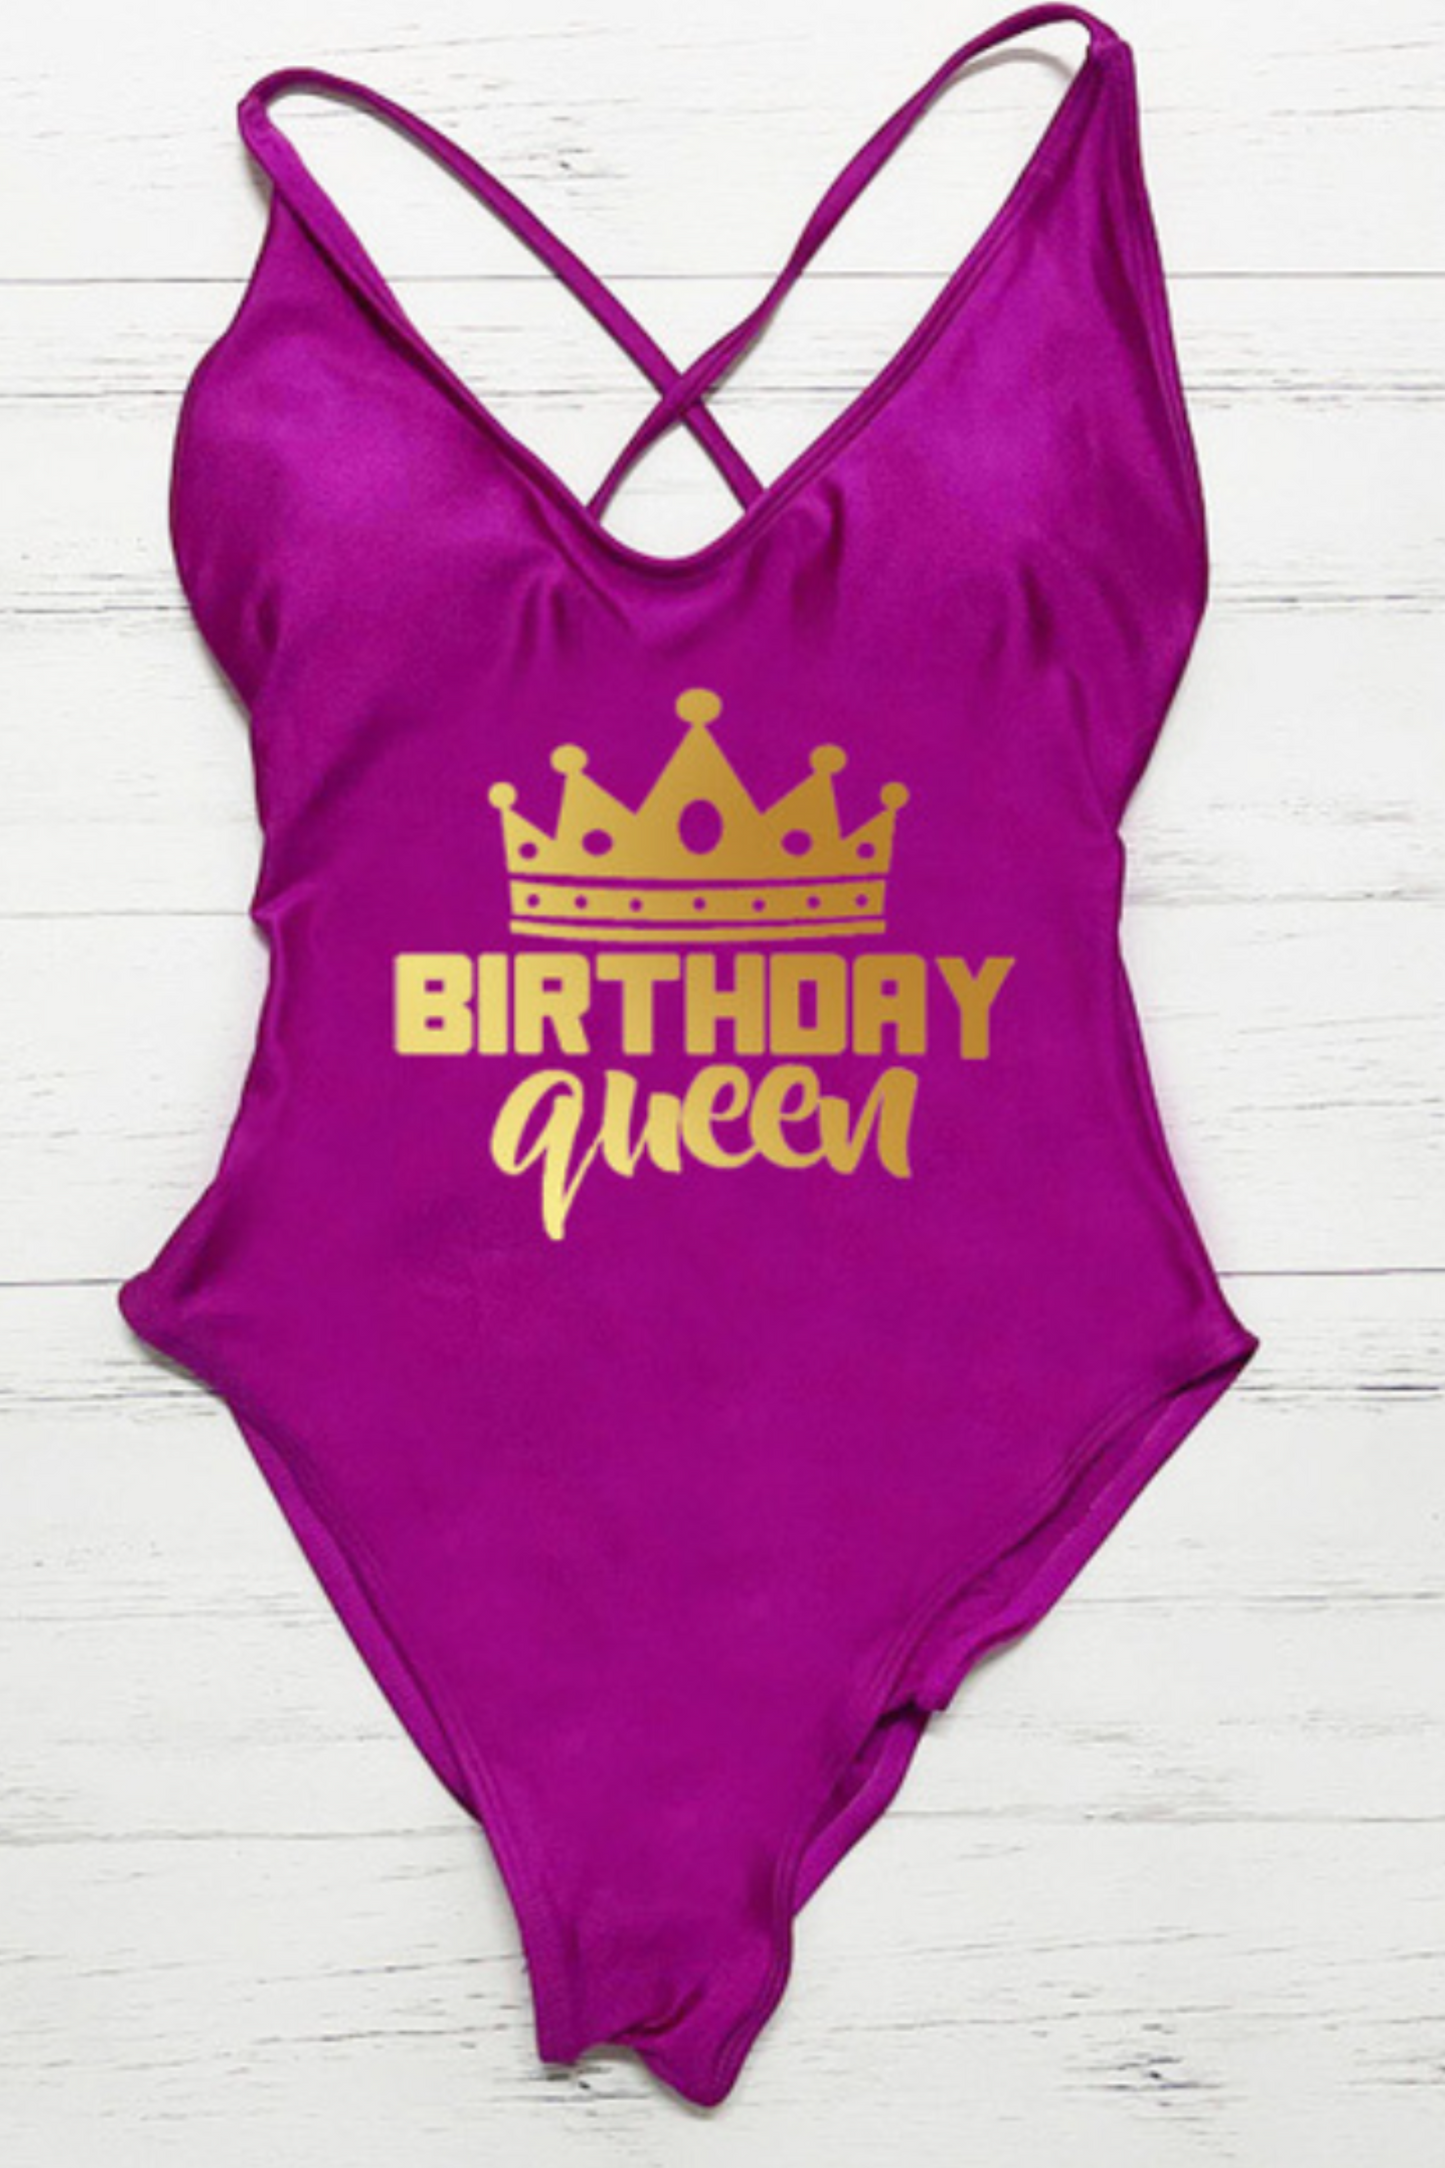 Birthday Queen Swimsuit